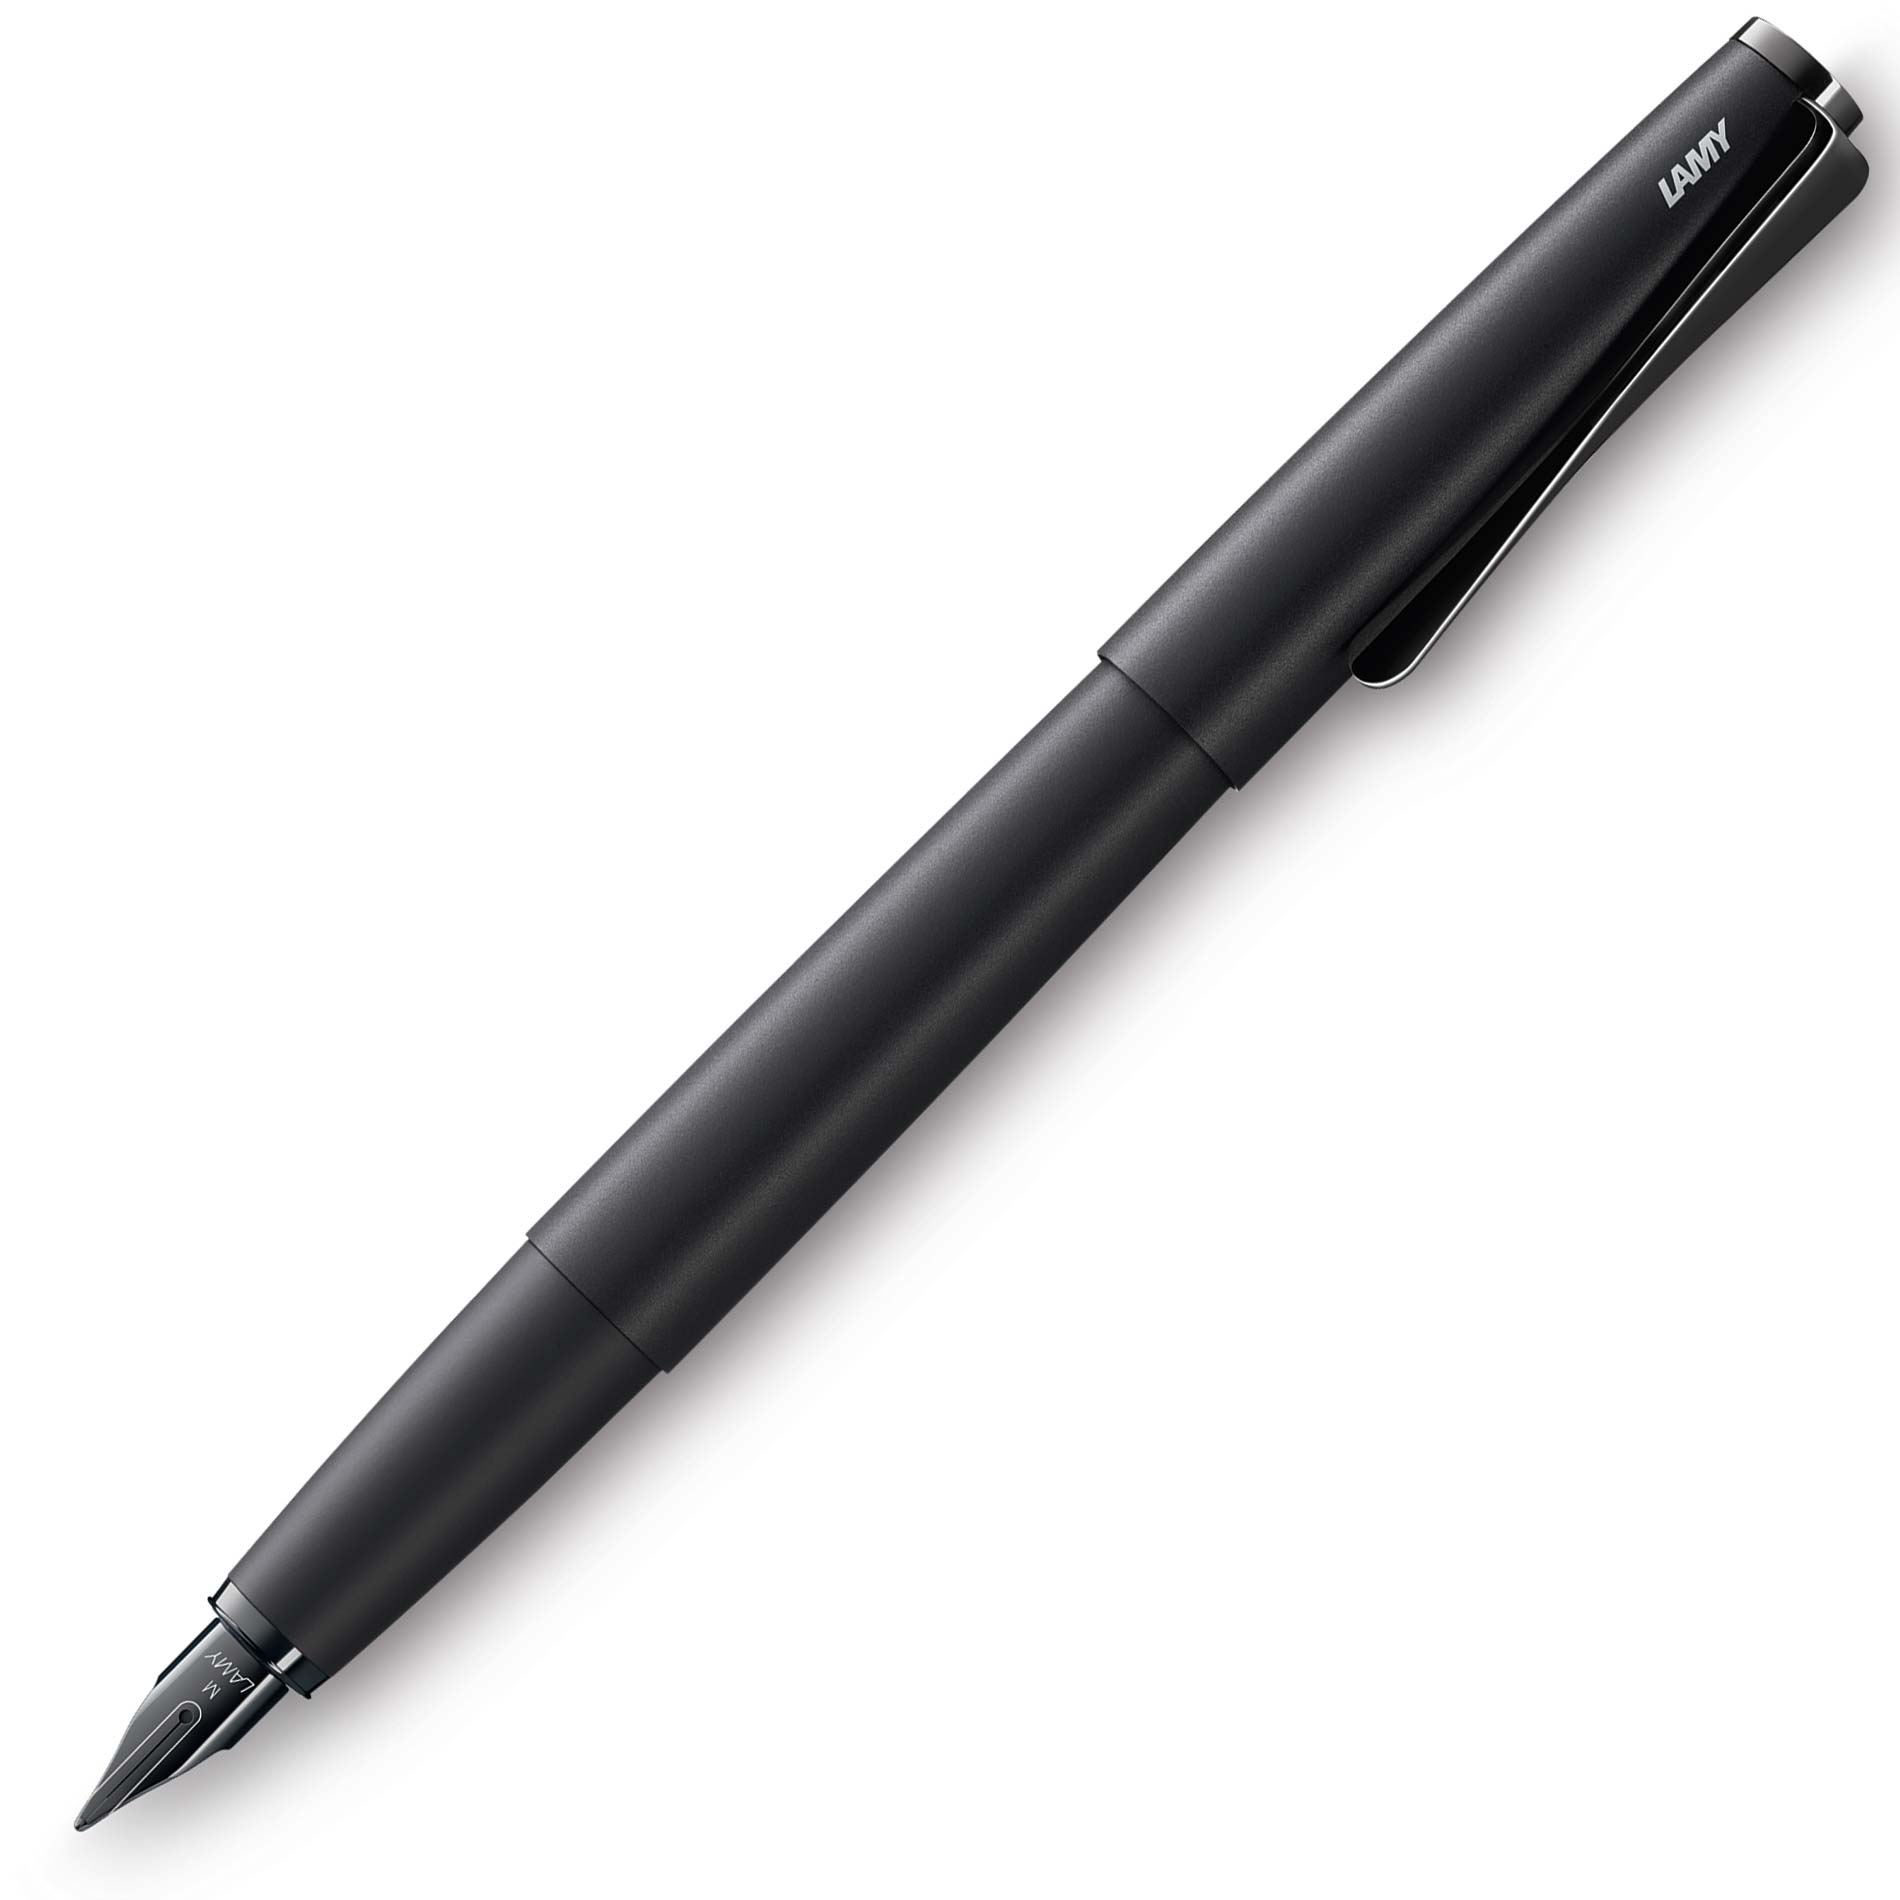 Beeldhouwer Het spijt me Foto Lamy Studio Lx All Black Fountain Pen – Special Edition – The Nibsmith